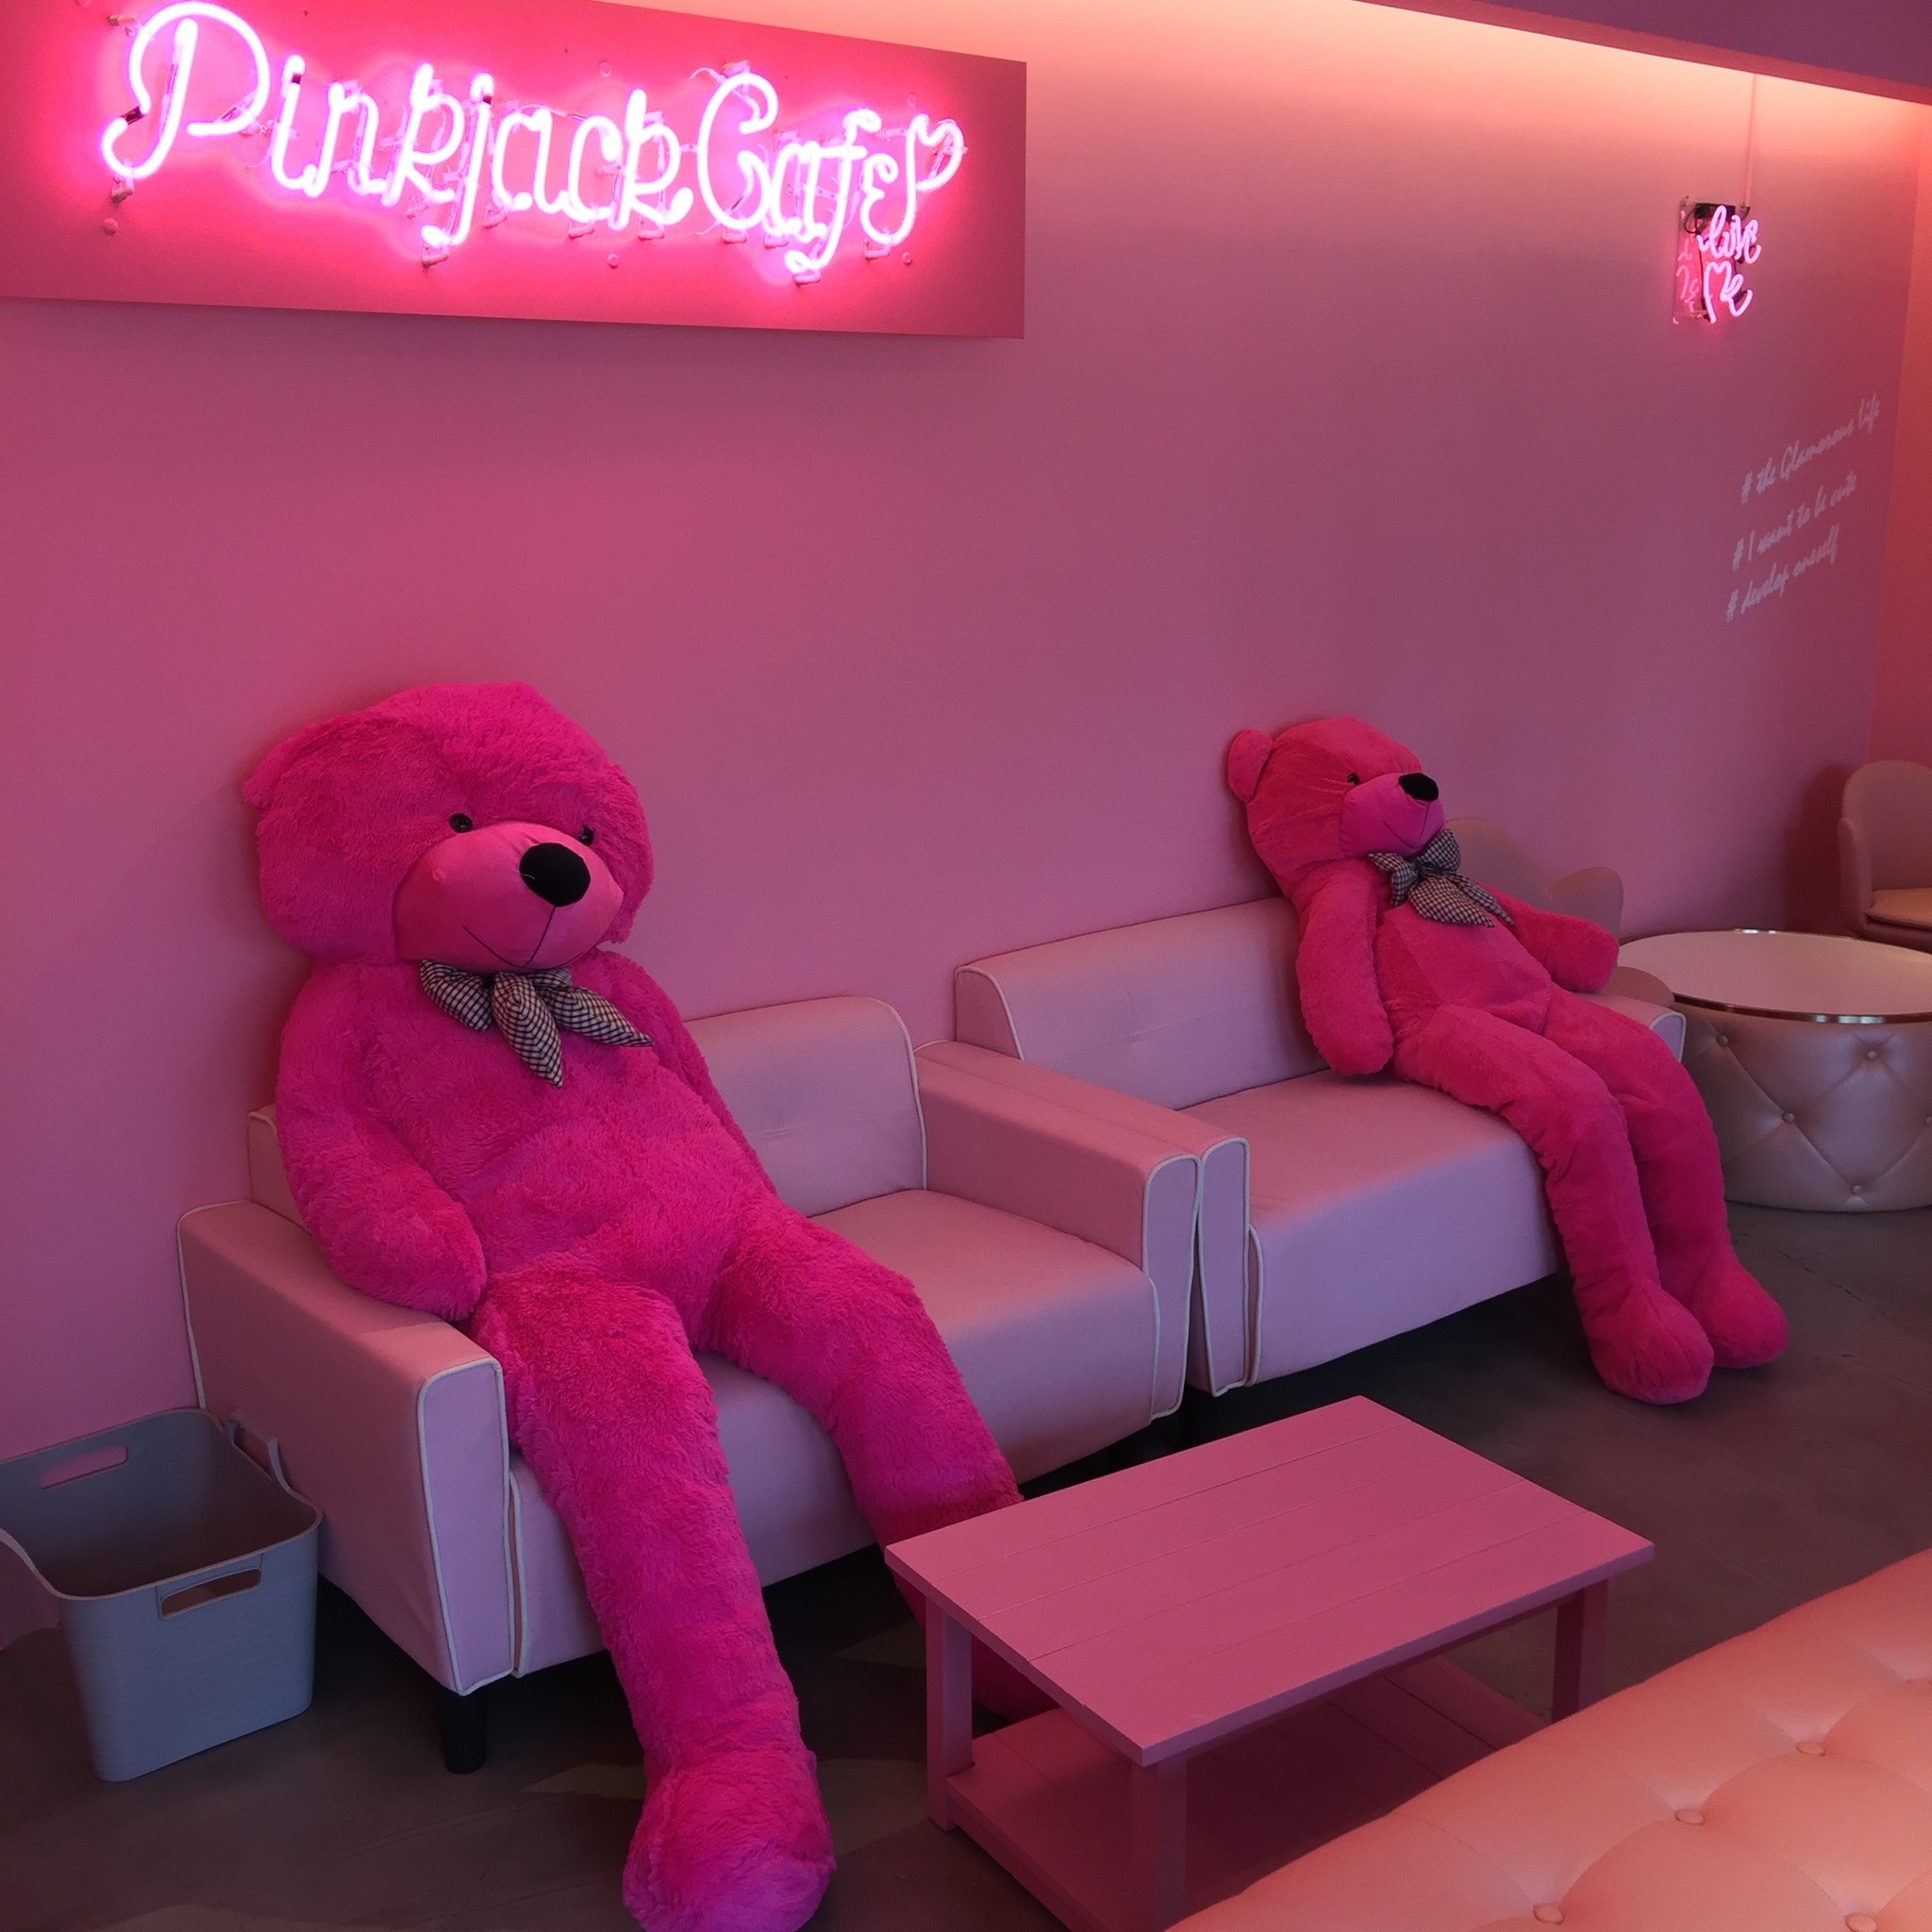 静岡の Pinkjackcafe ピンクジャックカフェ が夏に向けてメニューをリニューアル 新インスタ映え スポットがアジアに Kawaii を発信 Pinkjackcafeのプレスリリース